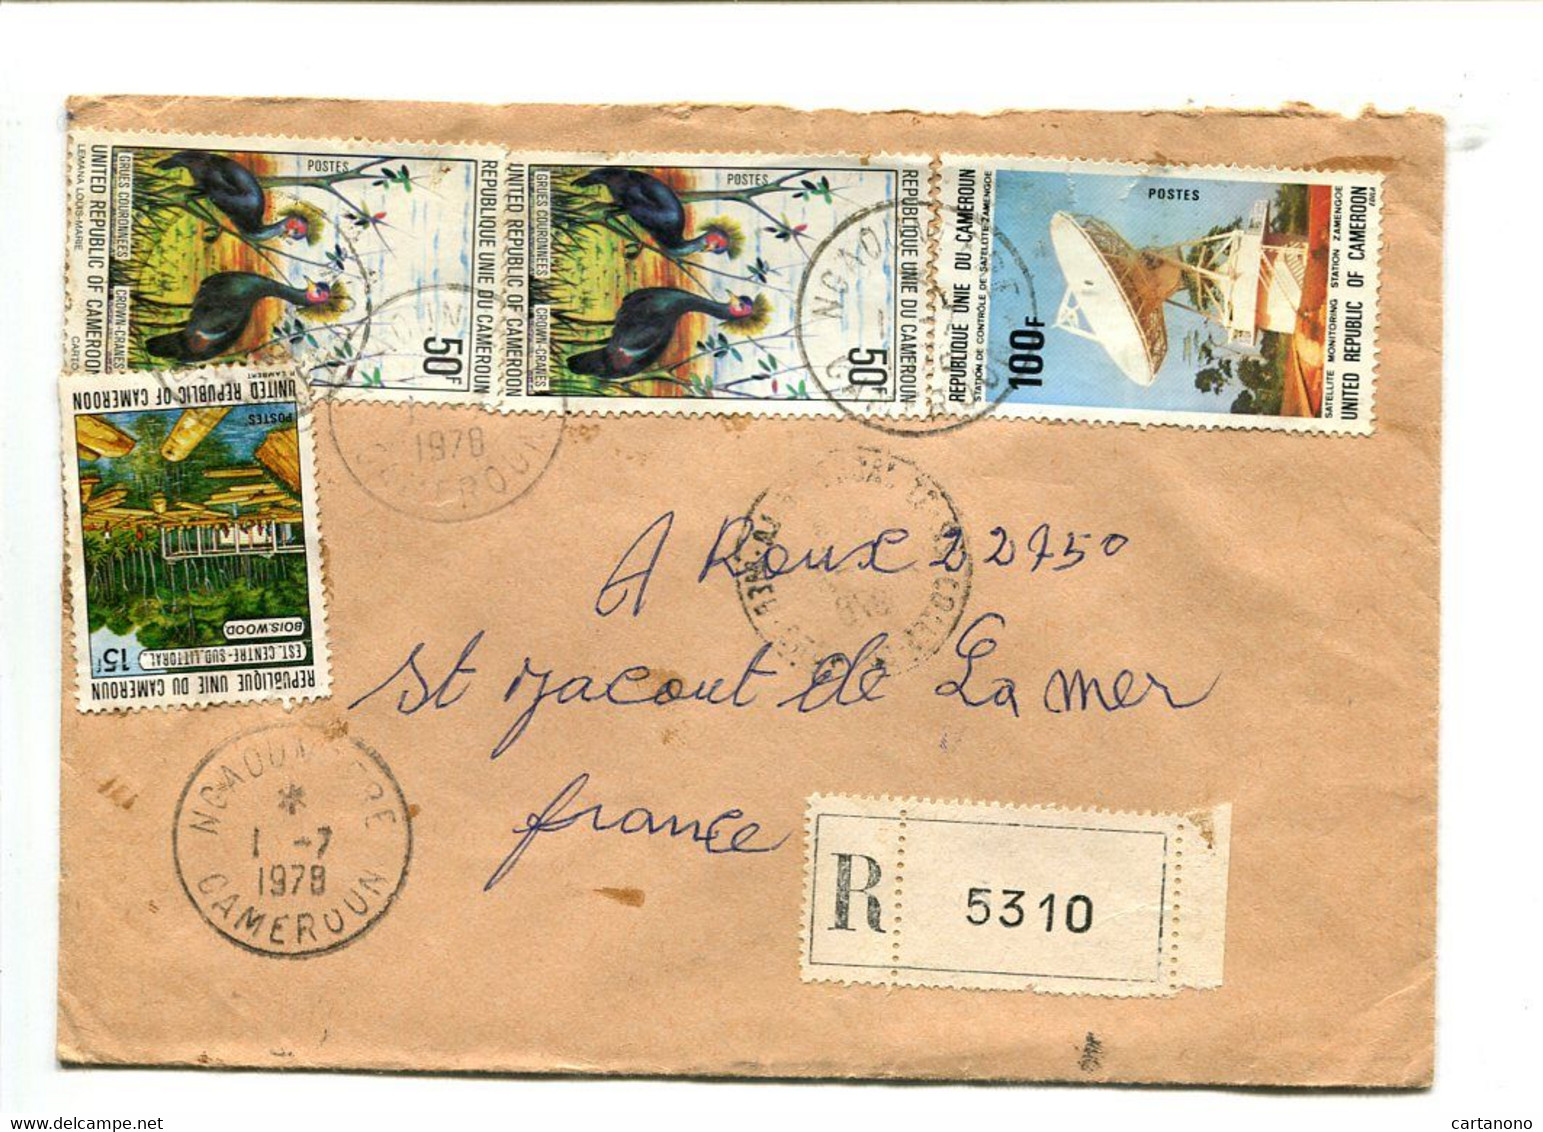 CAMEROUN 1978 - Affranchissement Sur Lettre Recommandée - Oiseaux / Télécom / Bois - Cameroun (1960-...)